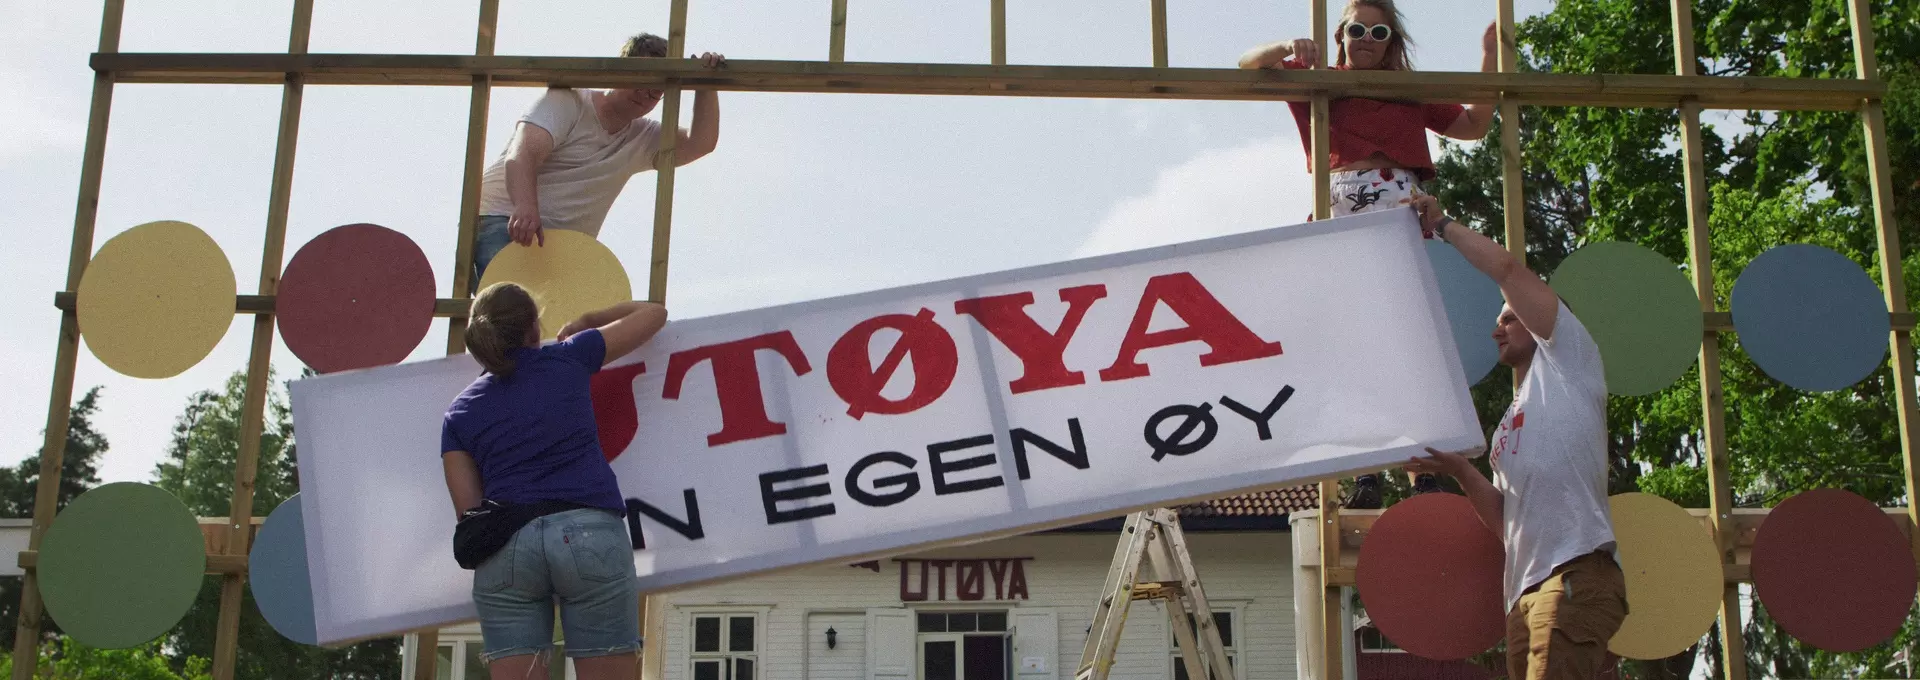 Fire ungdommer står og prøver å henge opp et skilt som det står "Utøya - din egen øy" på en slags port. Bak dem kan du se det hvite huset som er på Utøya. 